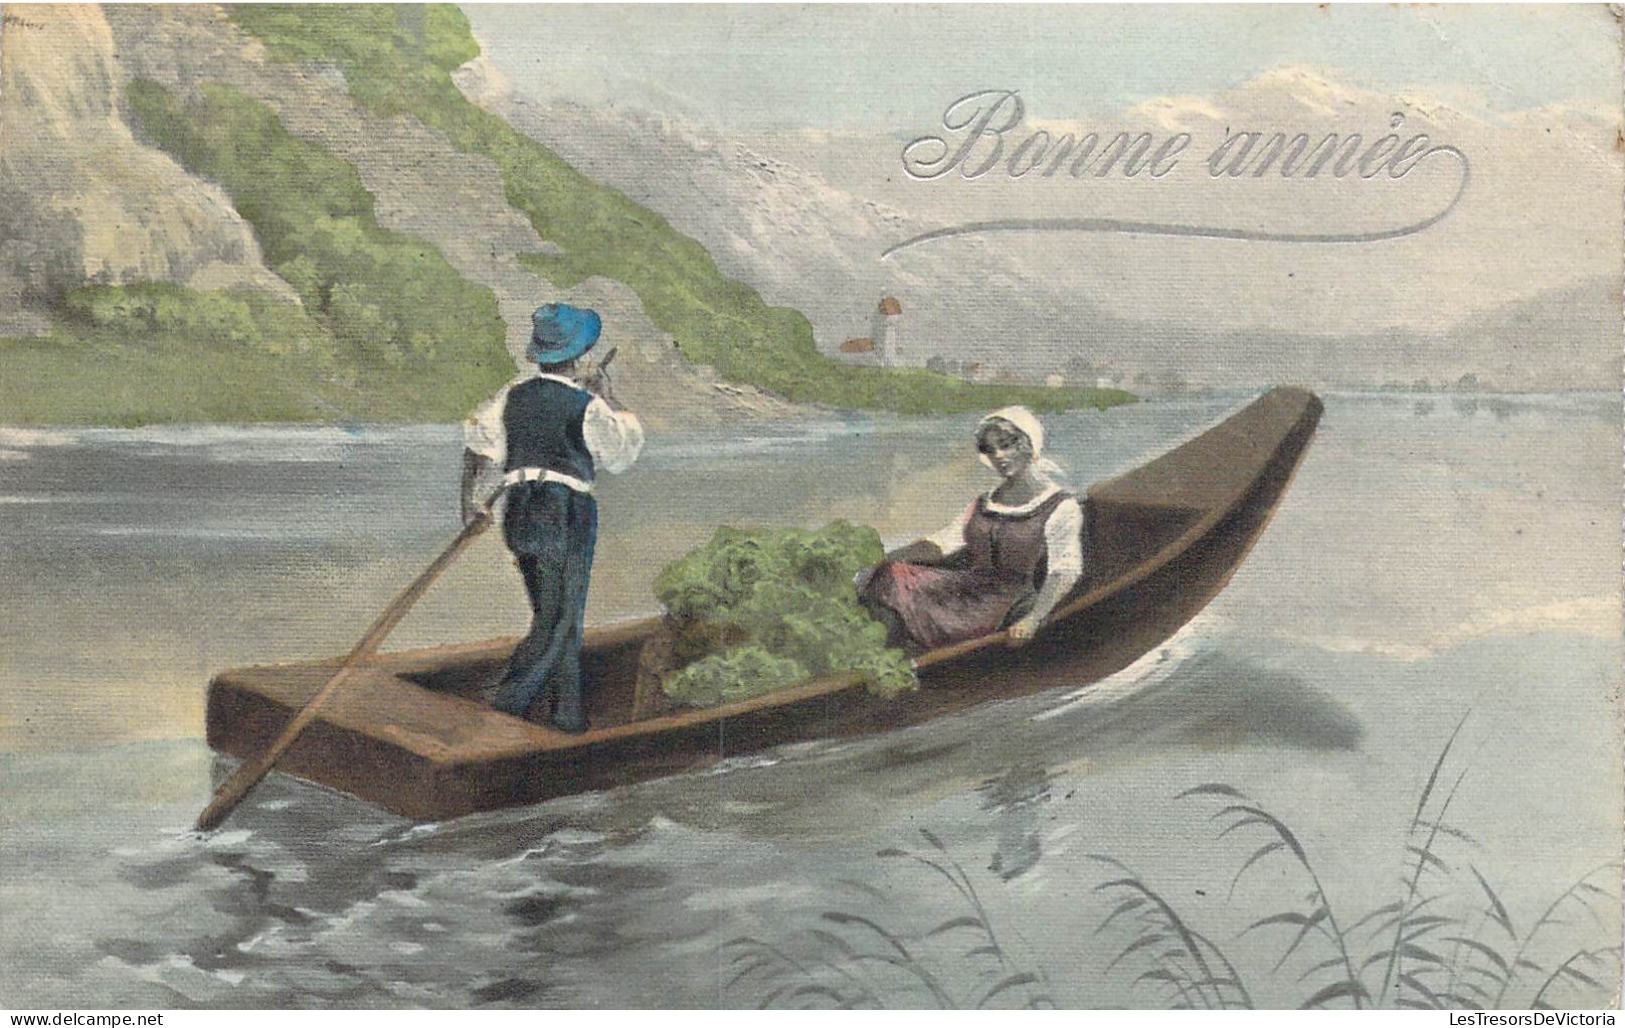 FETES - Bonne Année - Barque - Femme - Homme - Lac - Carte Postale Ancienne - Neujahr